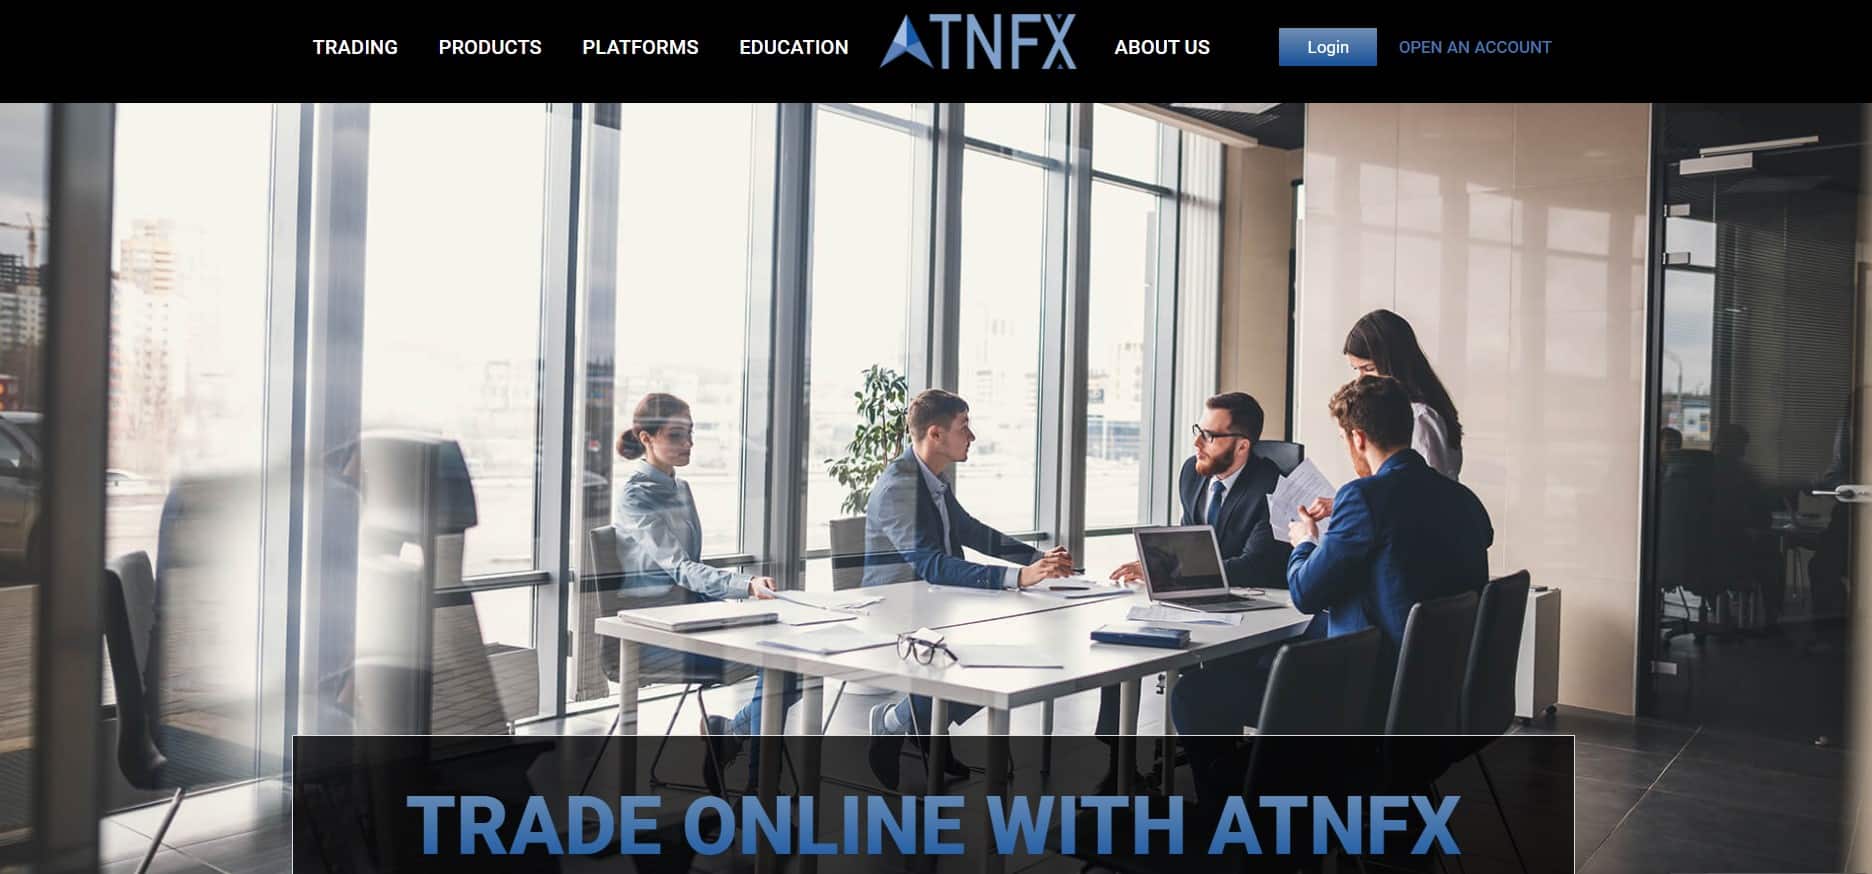 AtnFx website